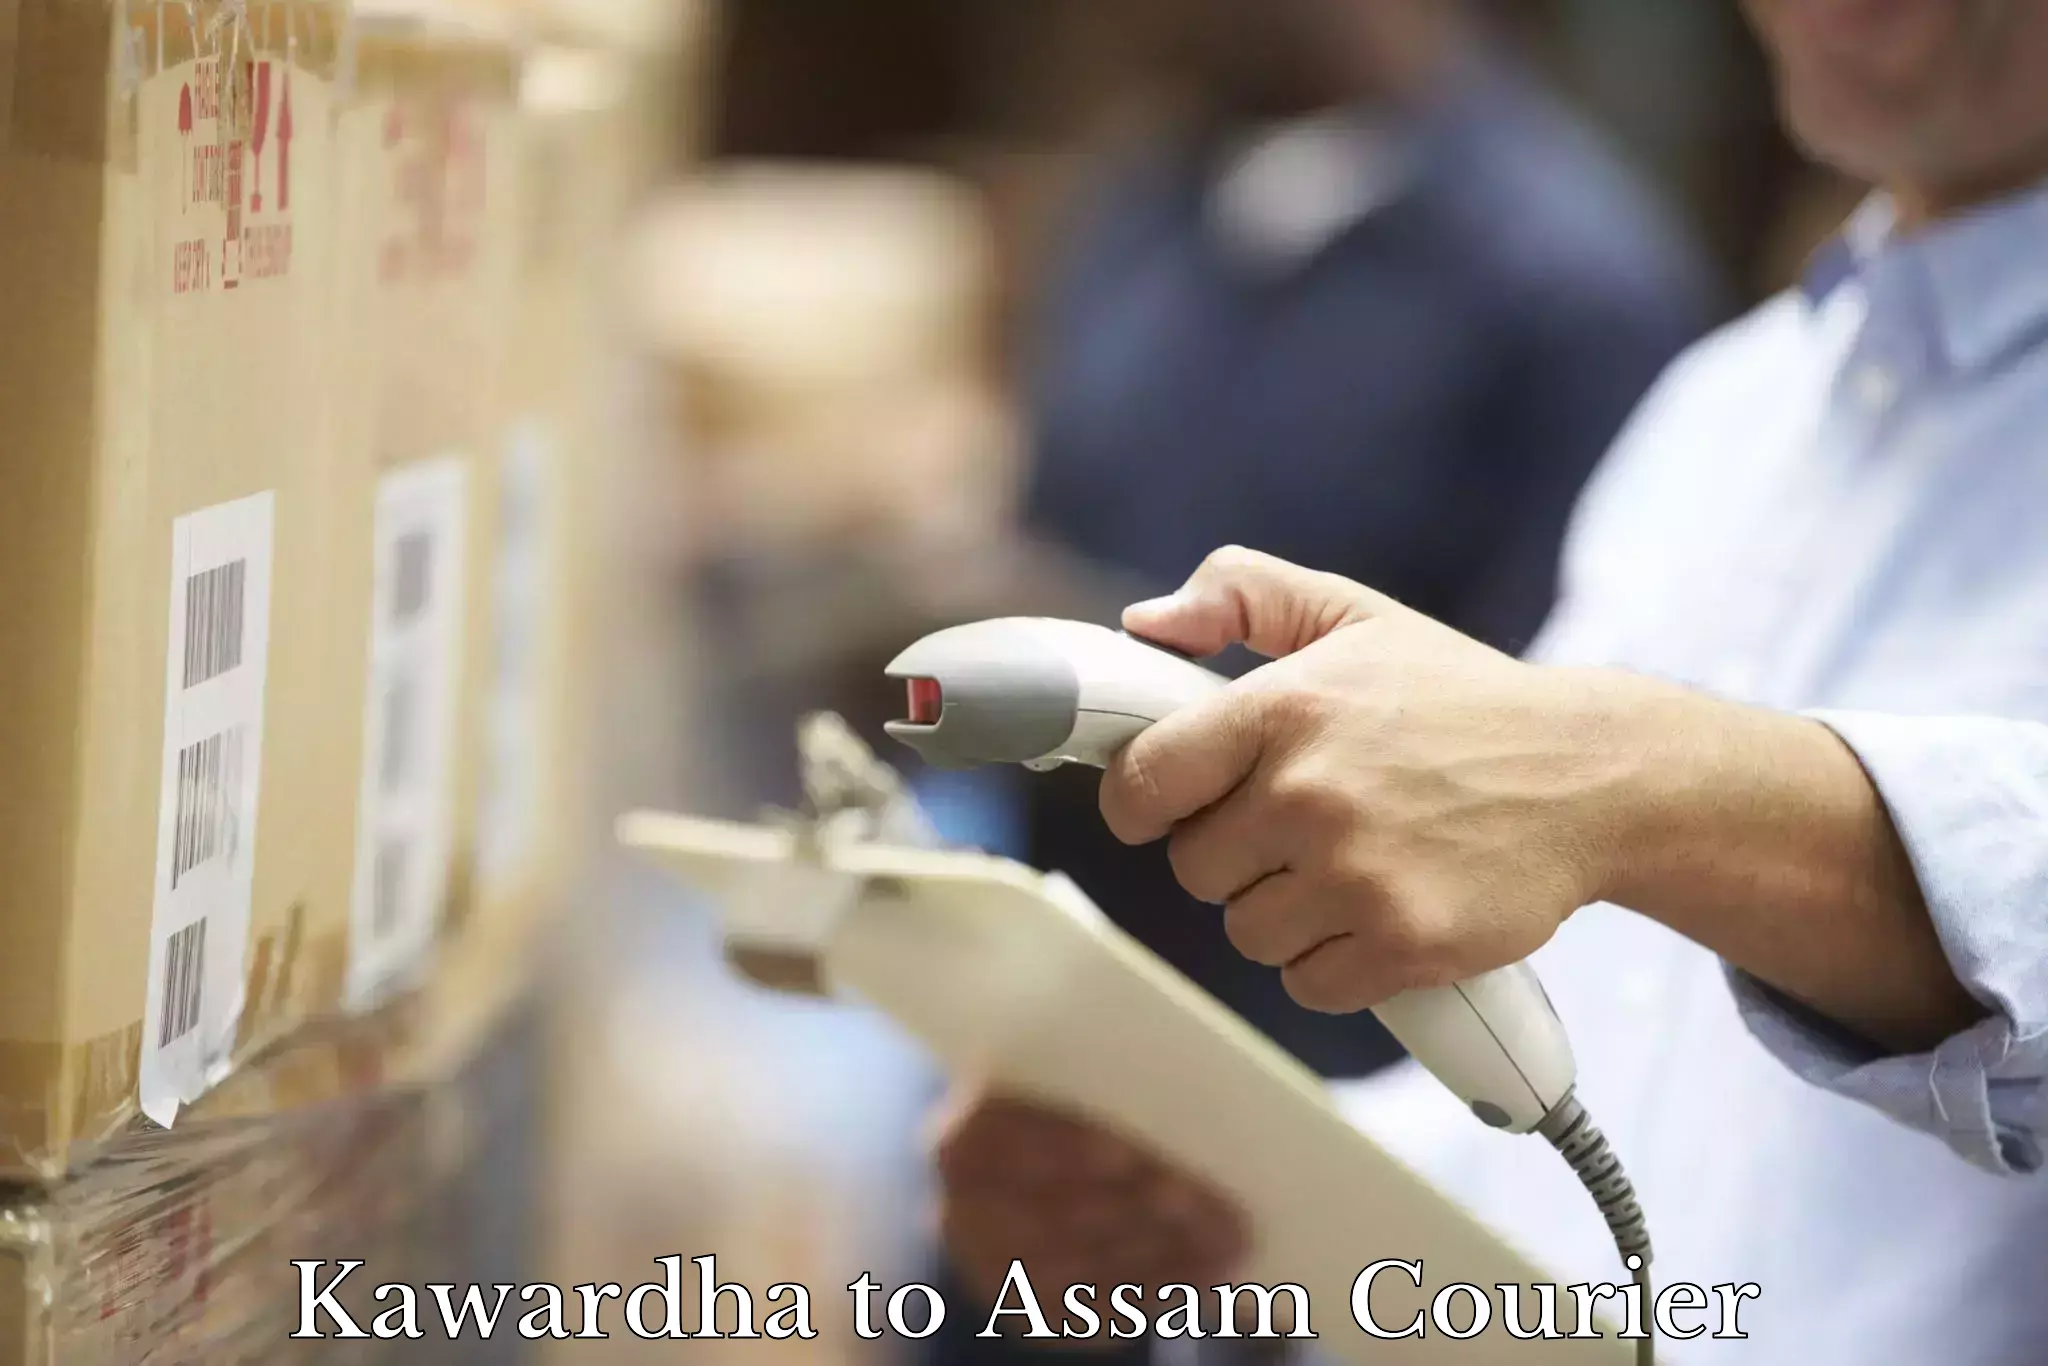 Next-generation courier services Kawardha to Mangaldoi